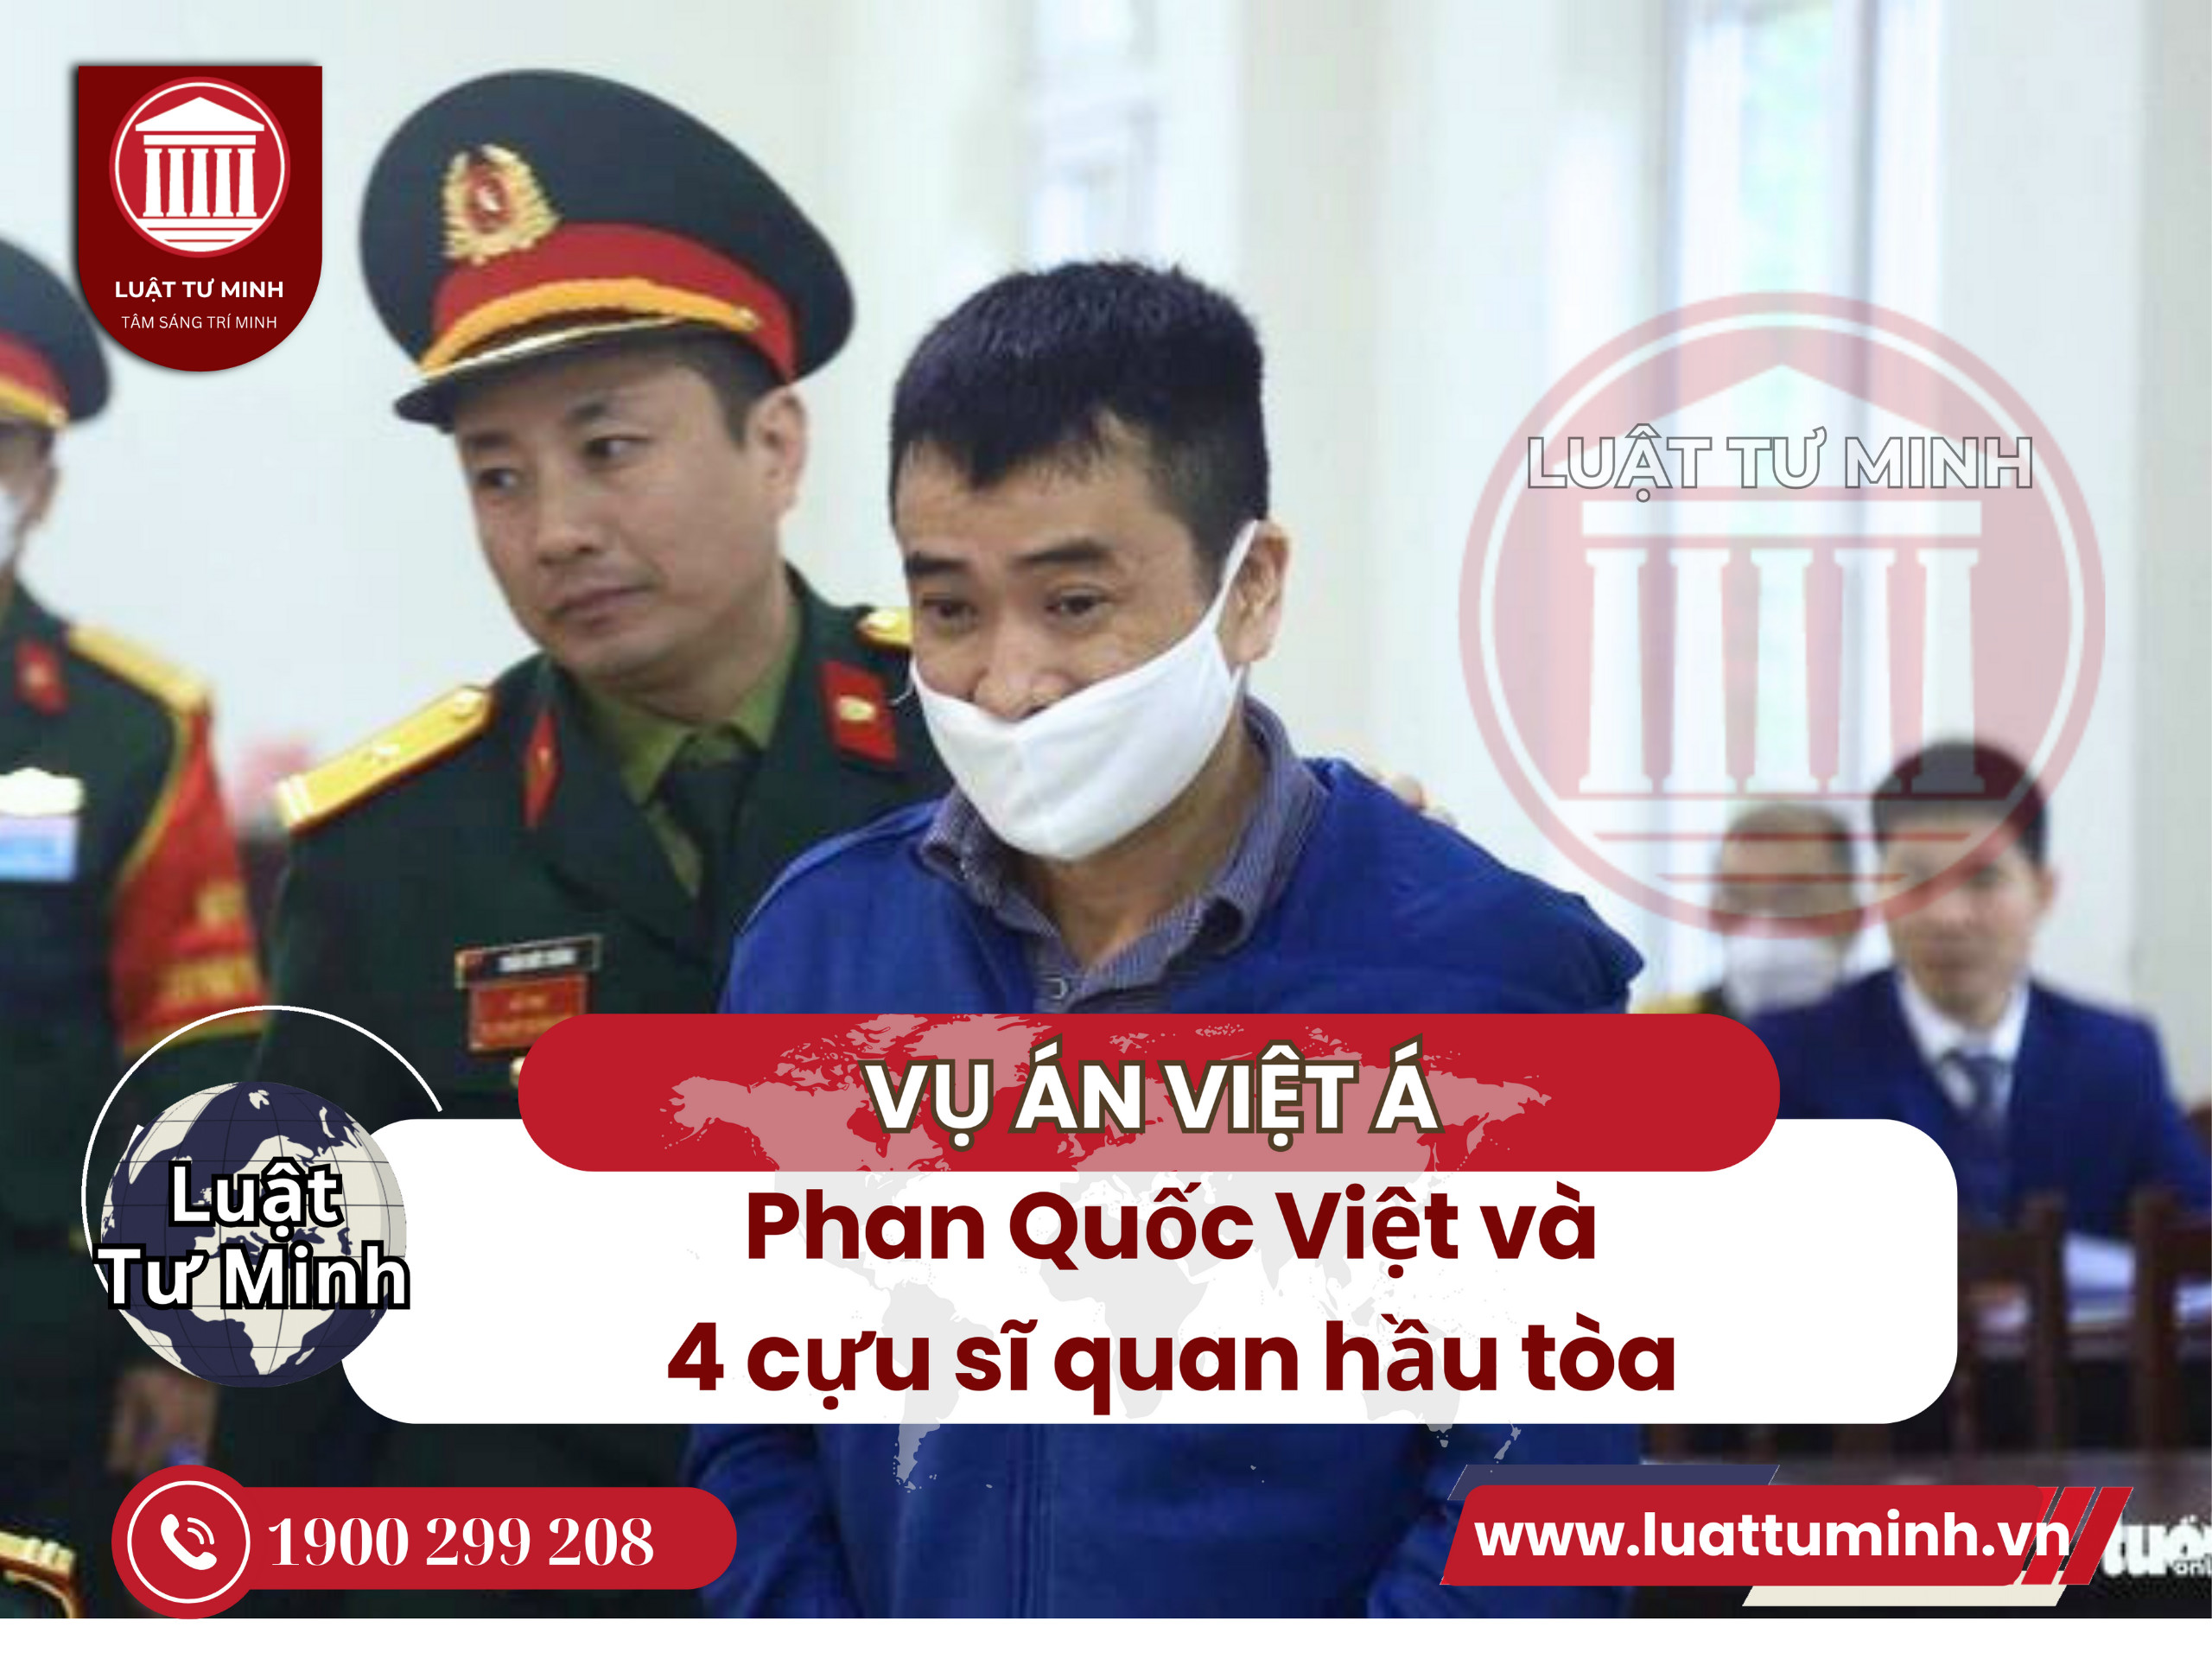 Phan Quốc Việt và 4 cựu sĩ quan hầu tòa trong vụ Việt Á - Luật Tư Minh